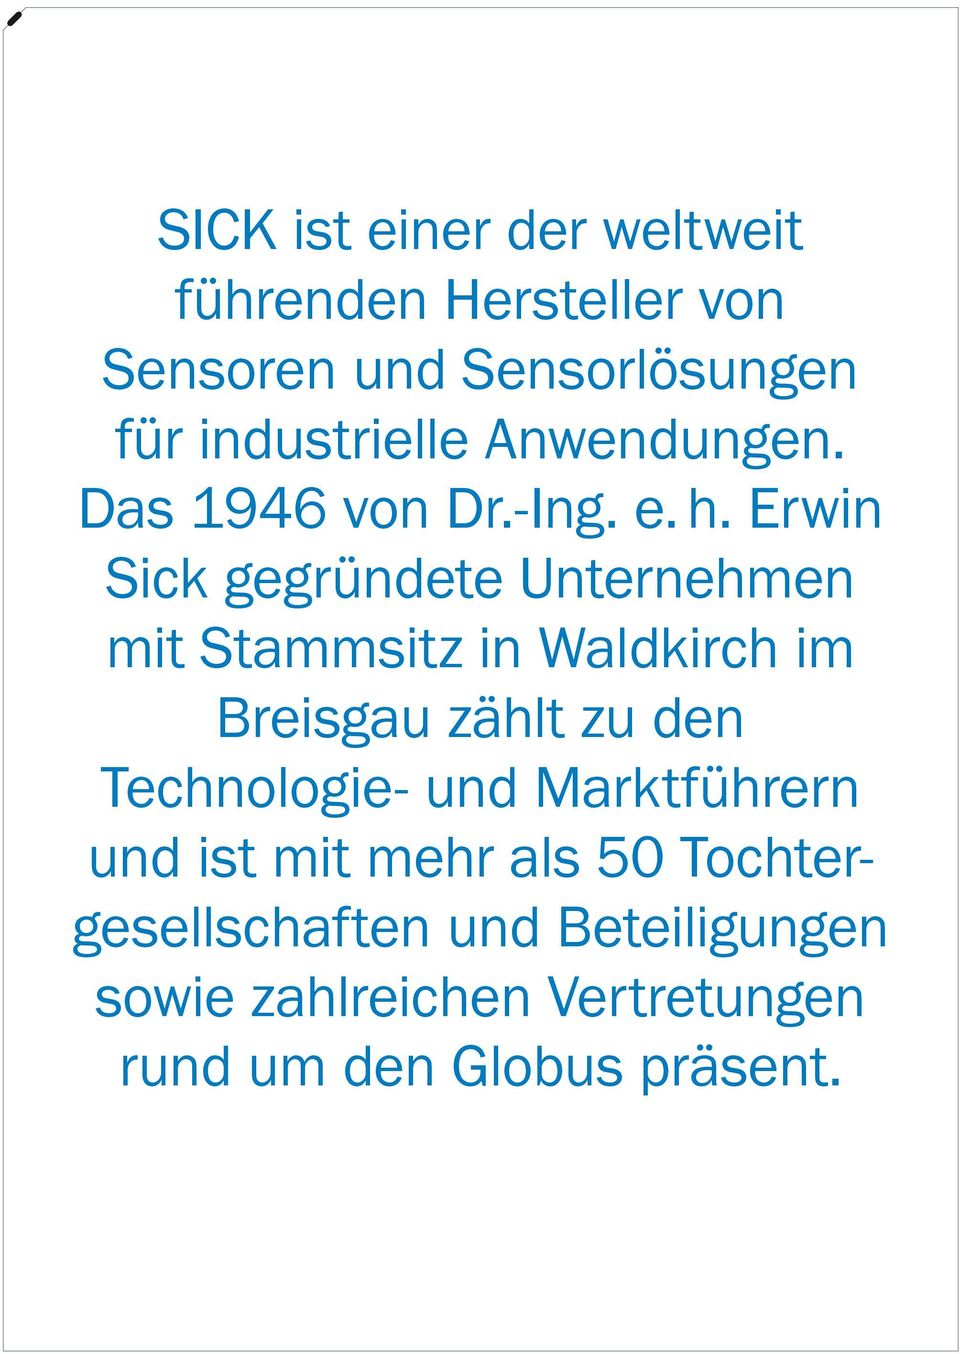 Erwin Sick gegründete Unternehmen mit Stammsitz in Waldkirch im Breisgau zählt zu den